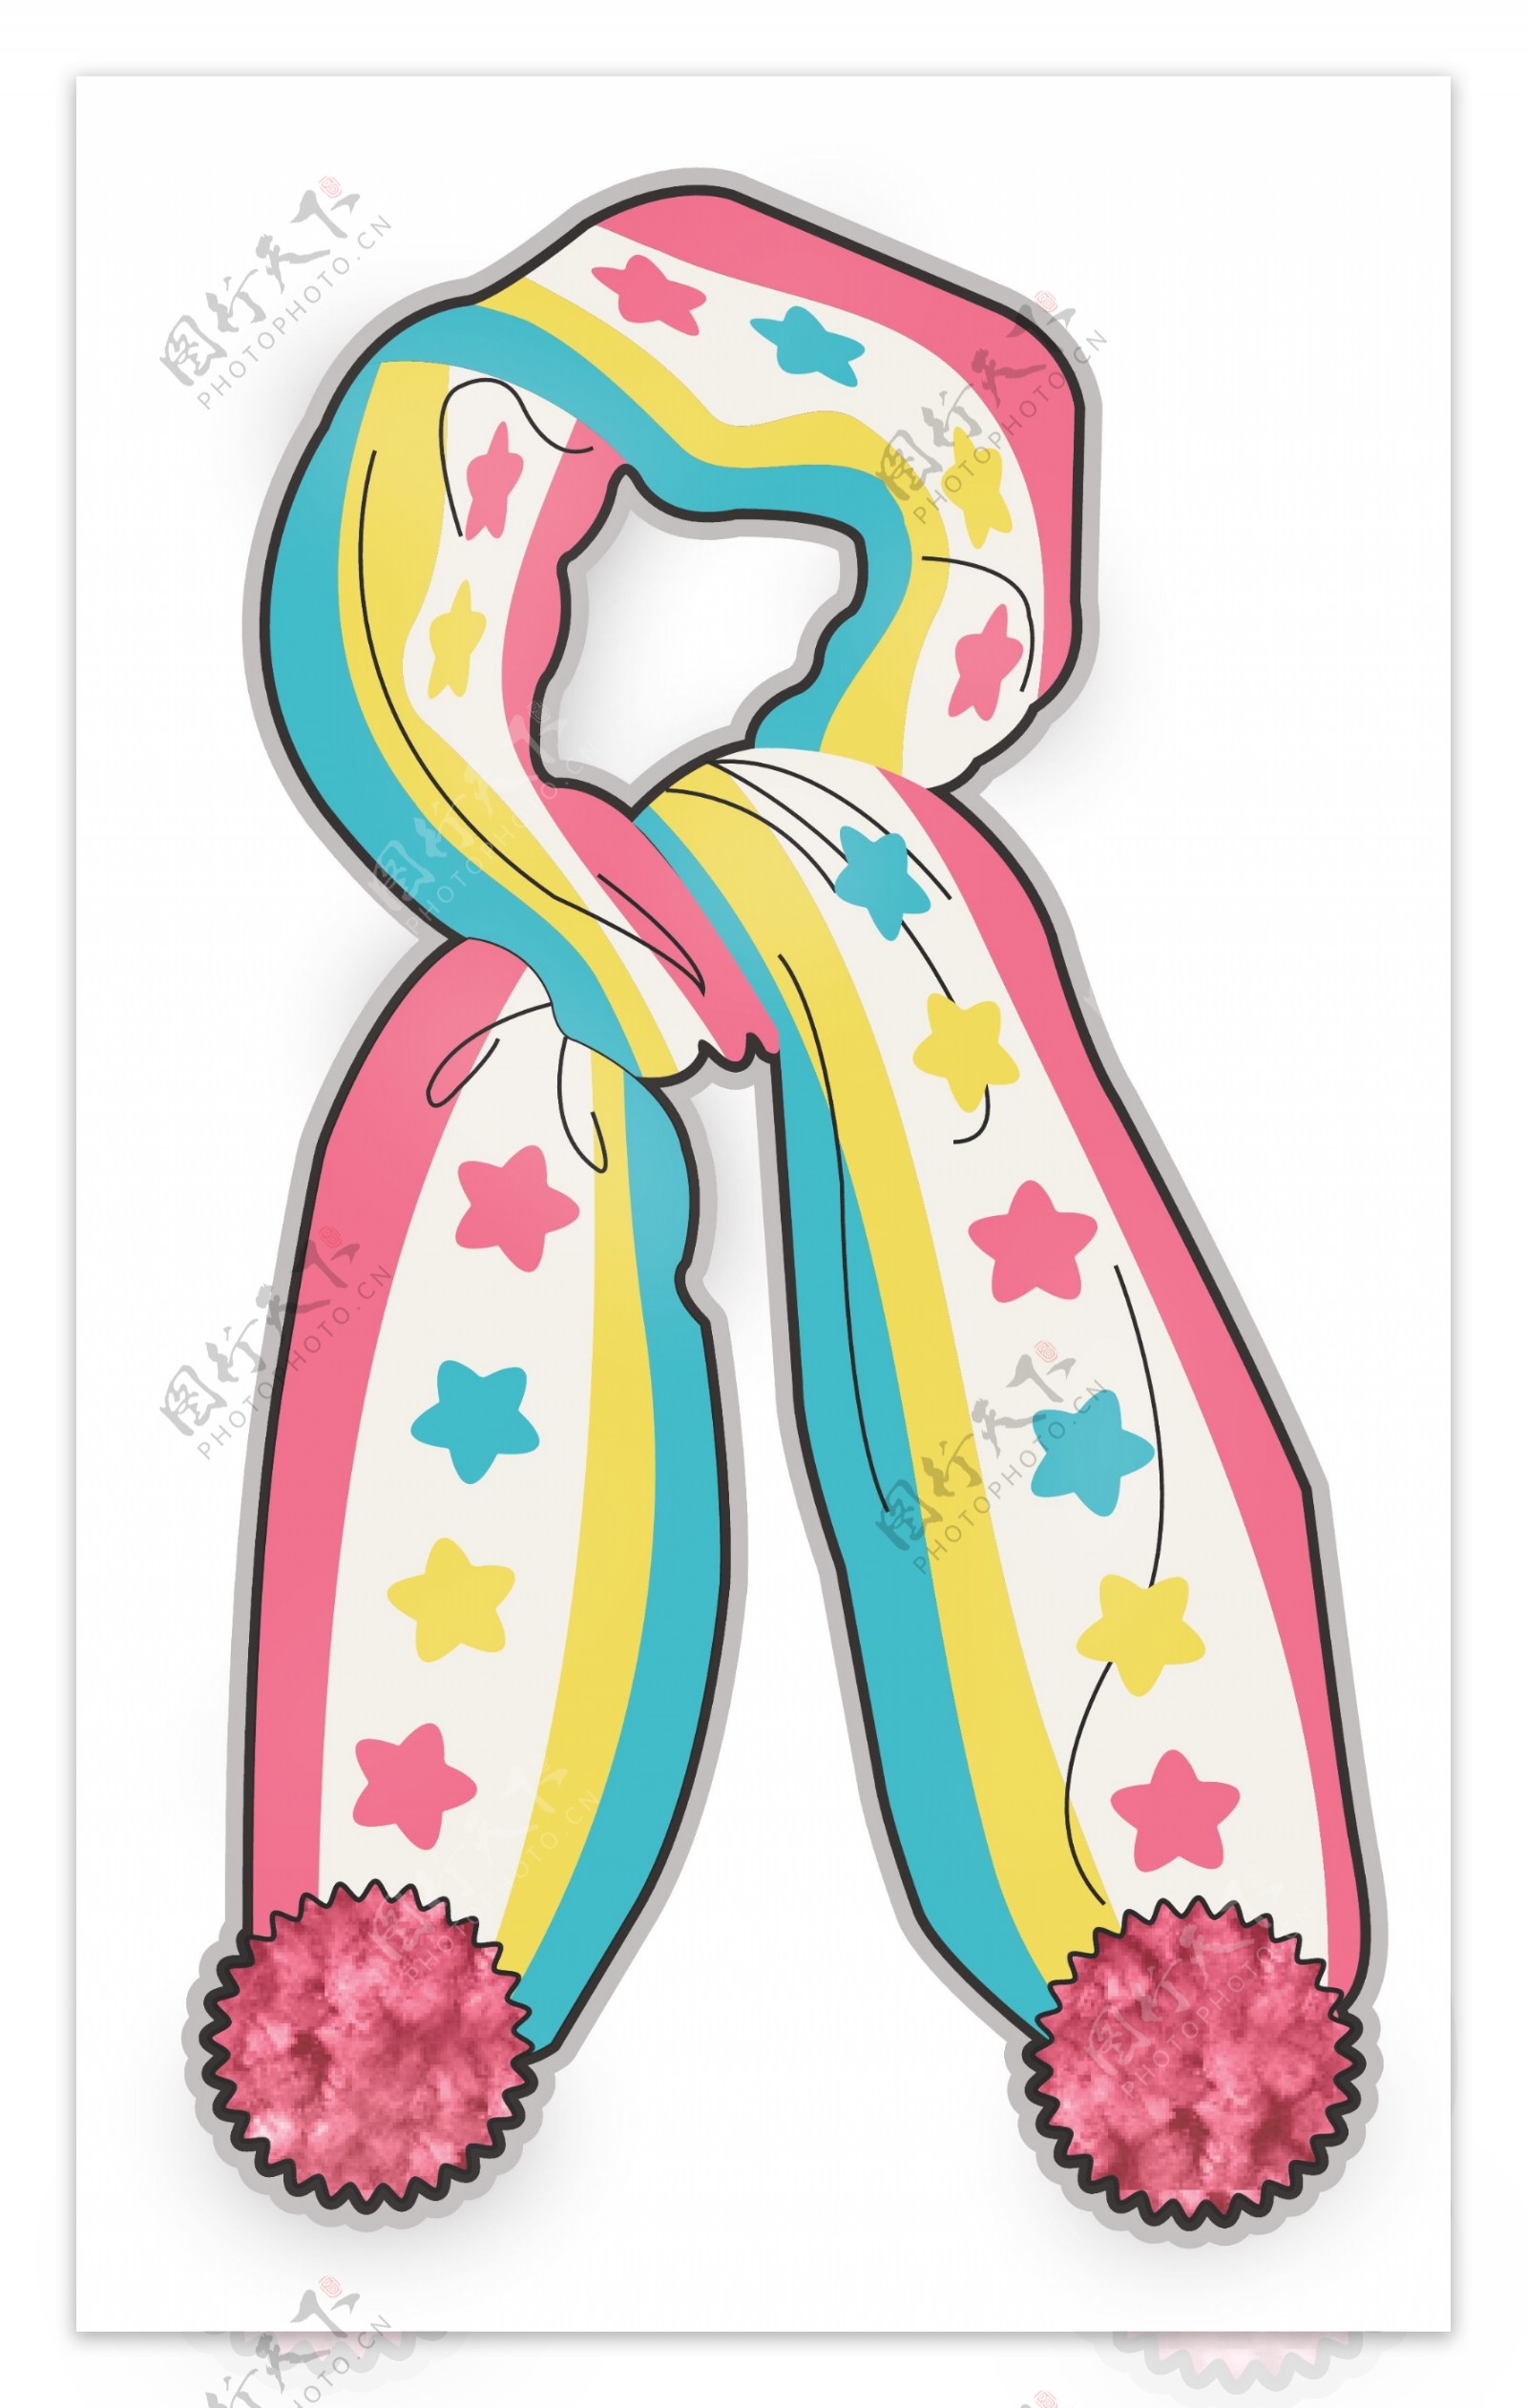 五角星围巾女宝宝服装设计彩色原稿矢量素材